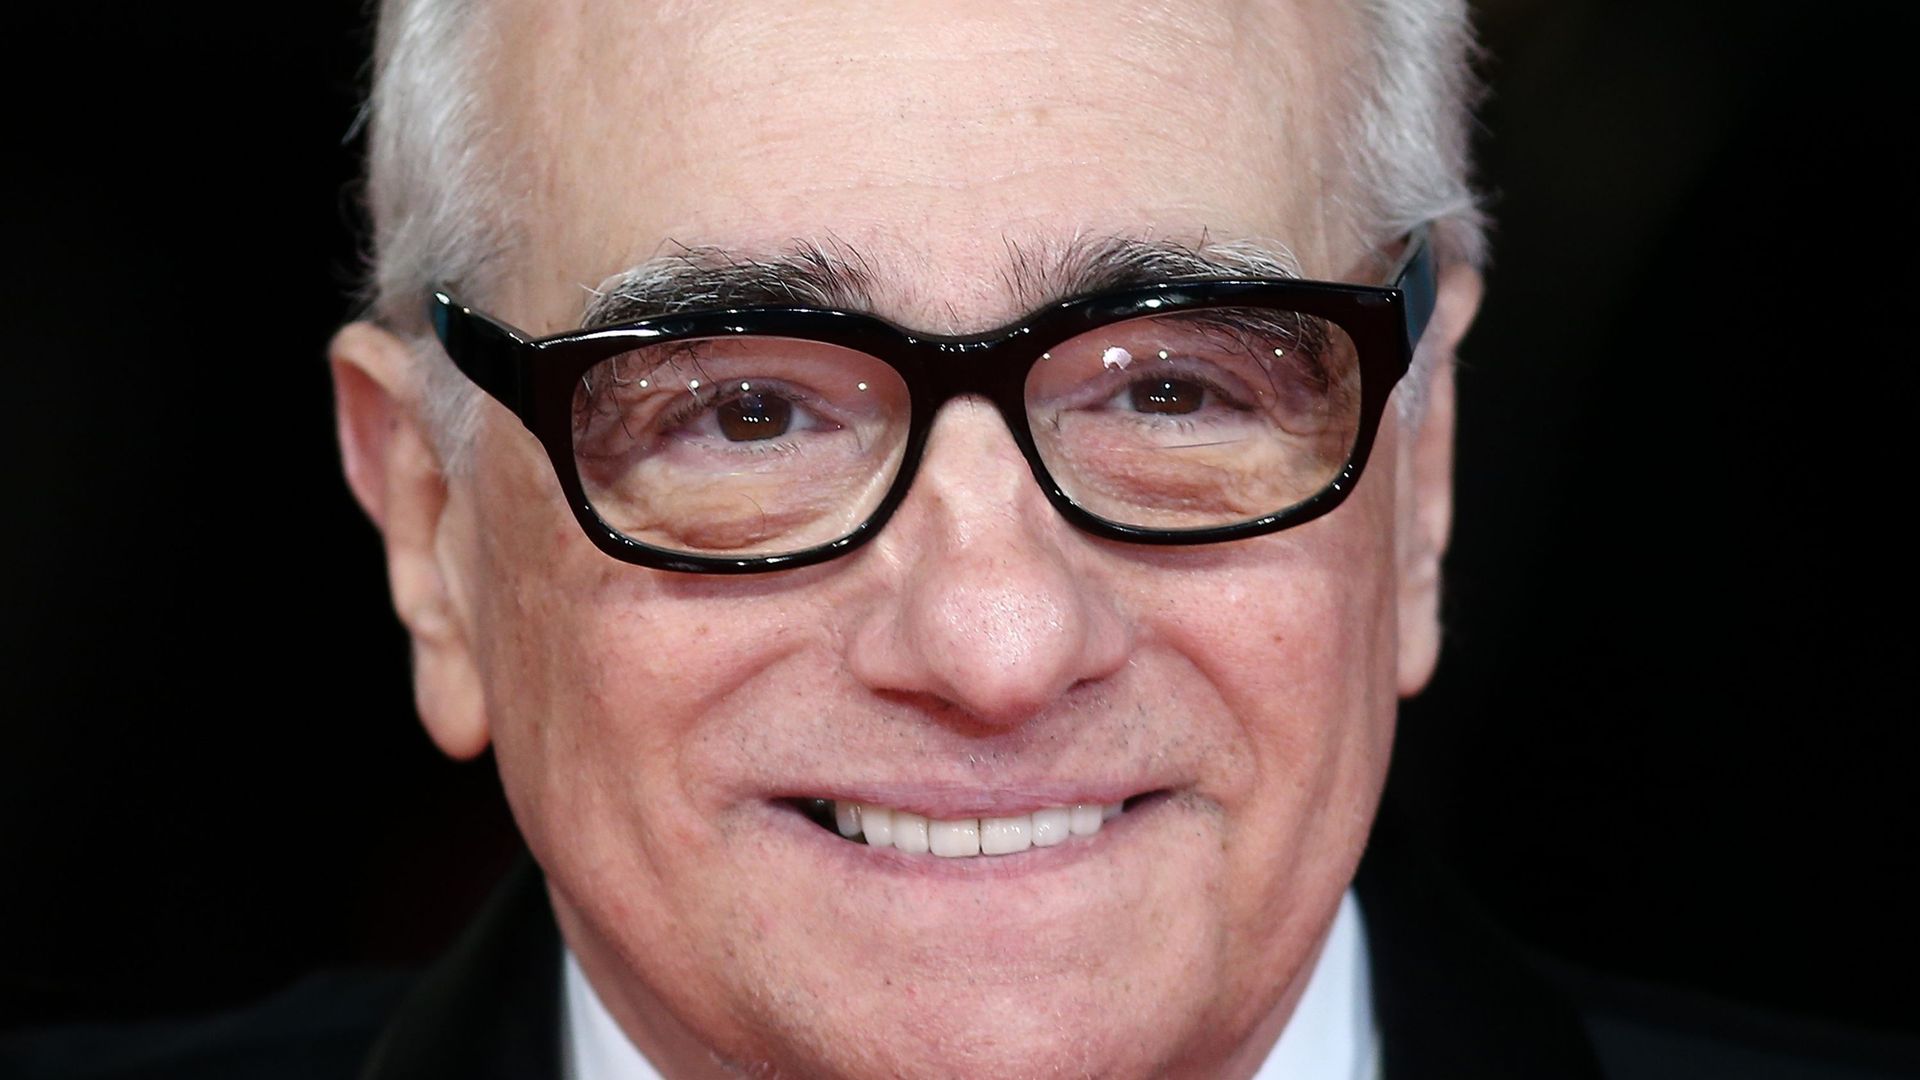 Martin Scorsese a réalisé l'épisode pilote de "Vinyl", série attendue en 2016 sur HBO